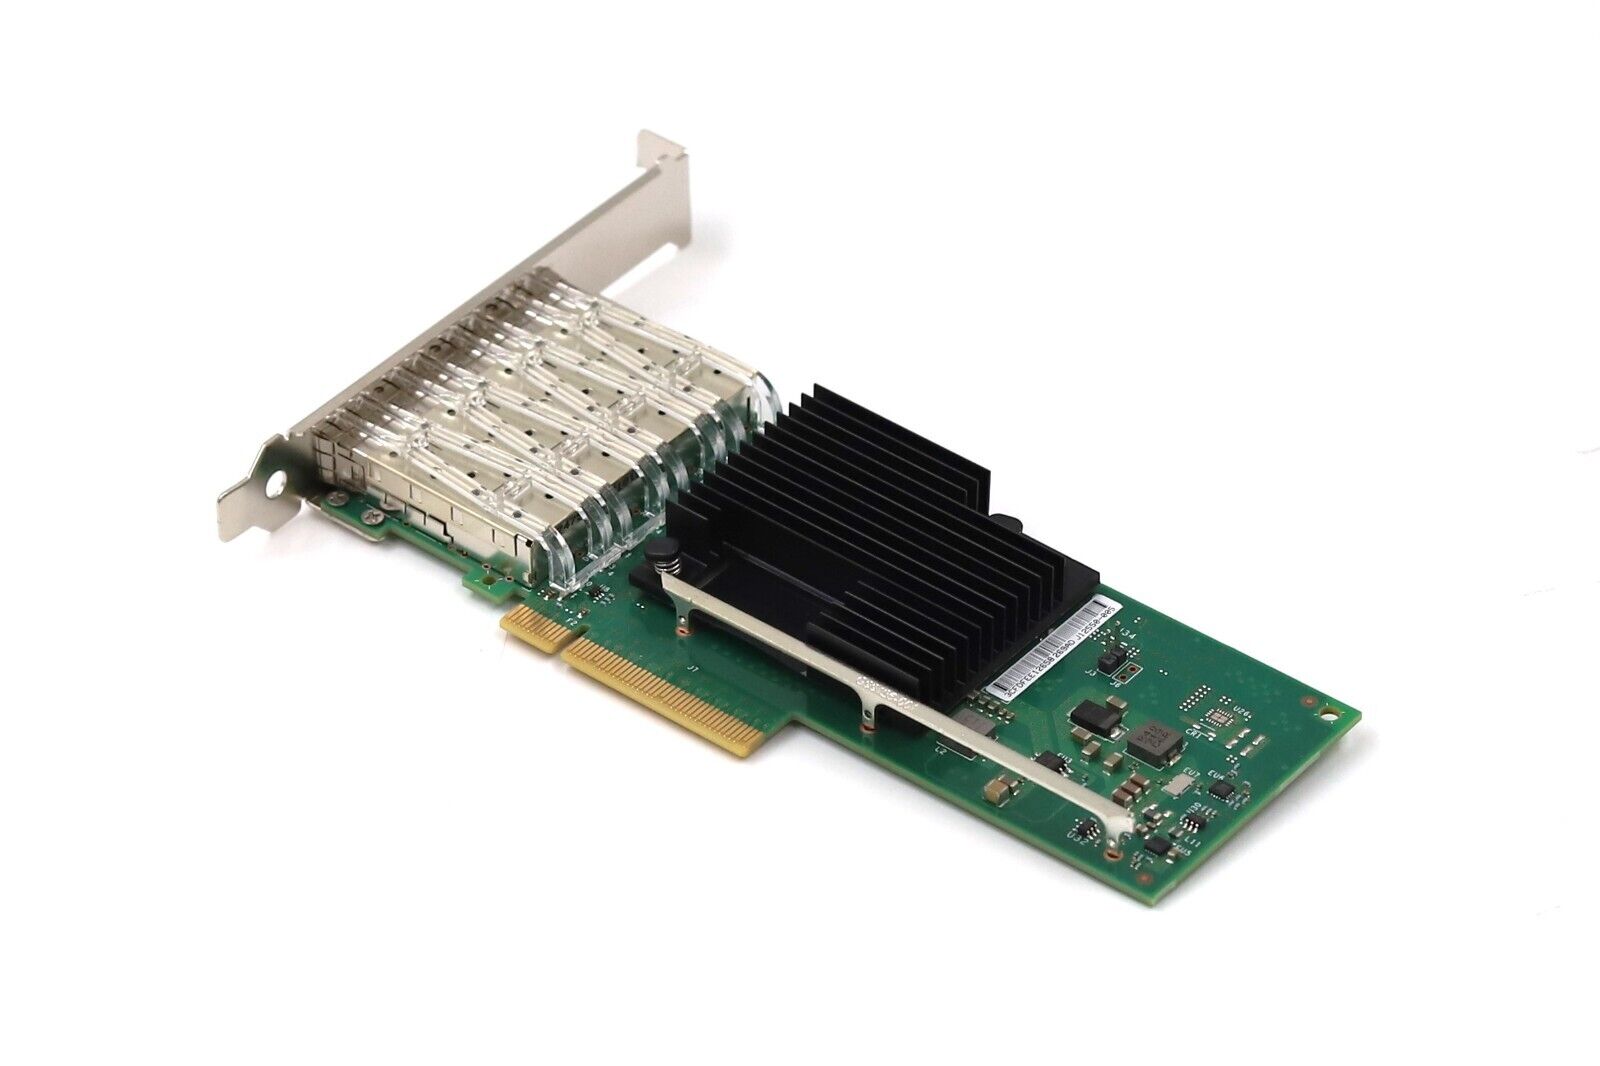 Cisco X710-DA4 Quad-Port 10GB SFP+ PCIe X8 Server Network Card P/N: 30-100131-01